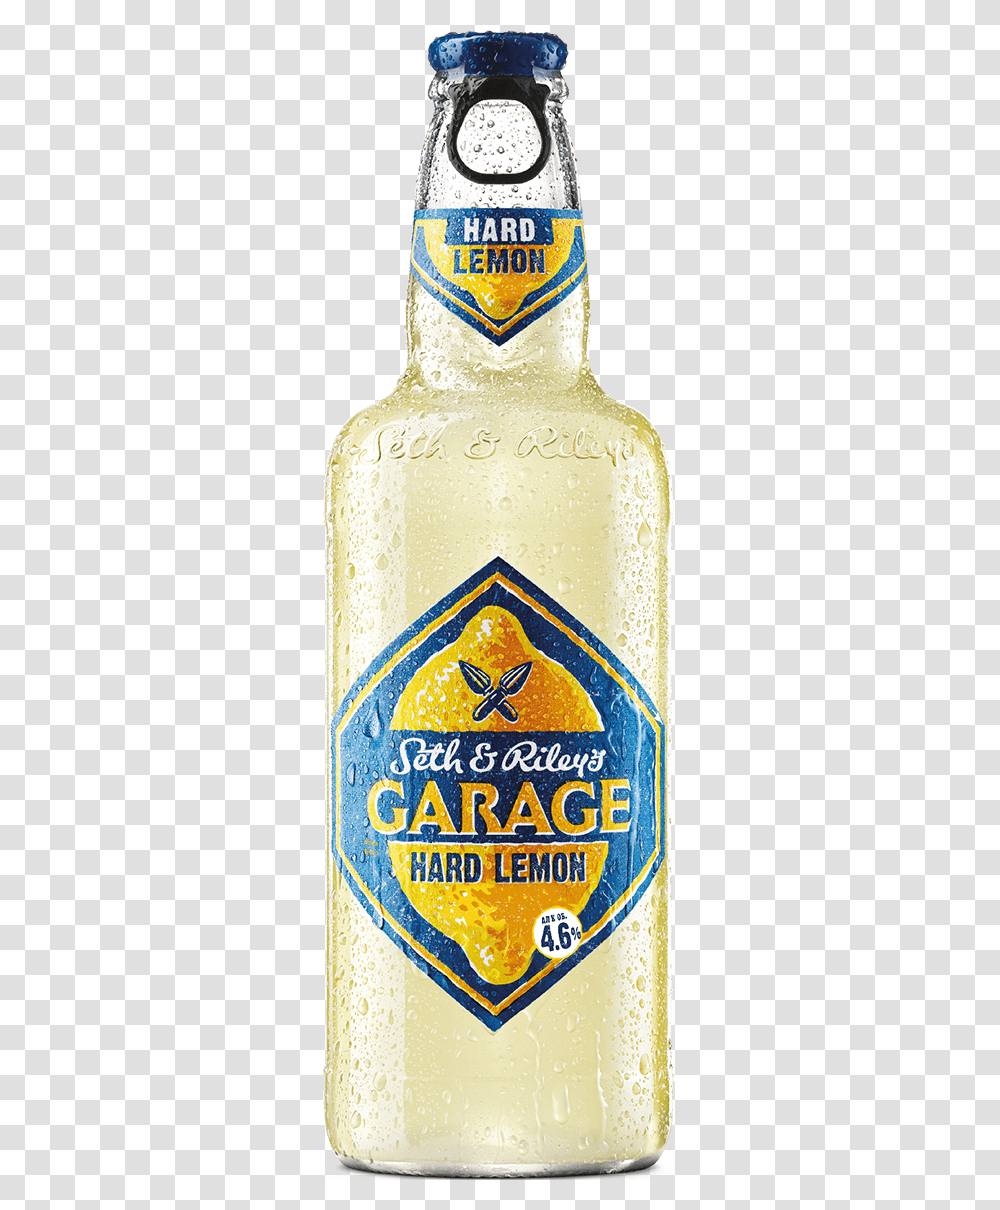 Sampr S Garage Hard Lemon Garage Hard Drink Lemon, Beer, Alcohol, Beverage, Bottle Transparent Png